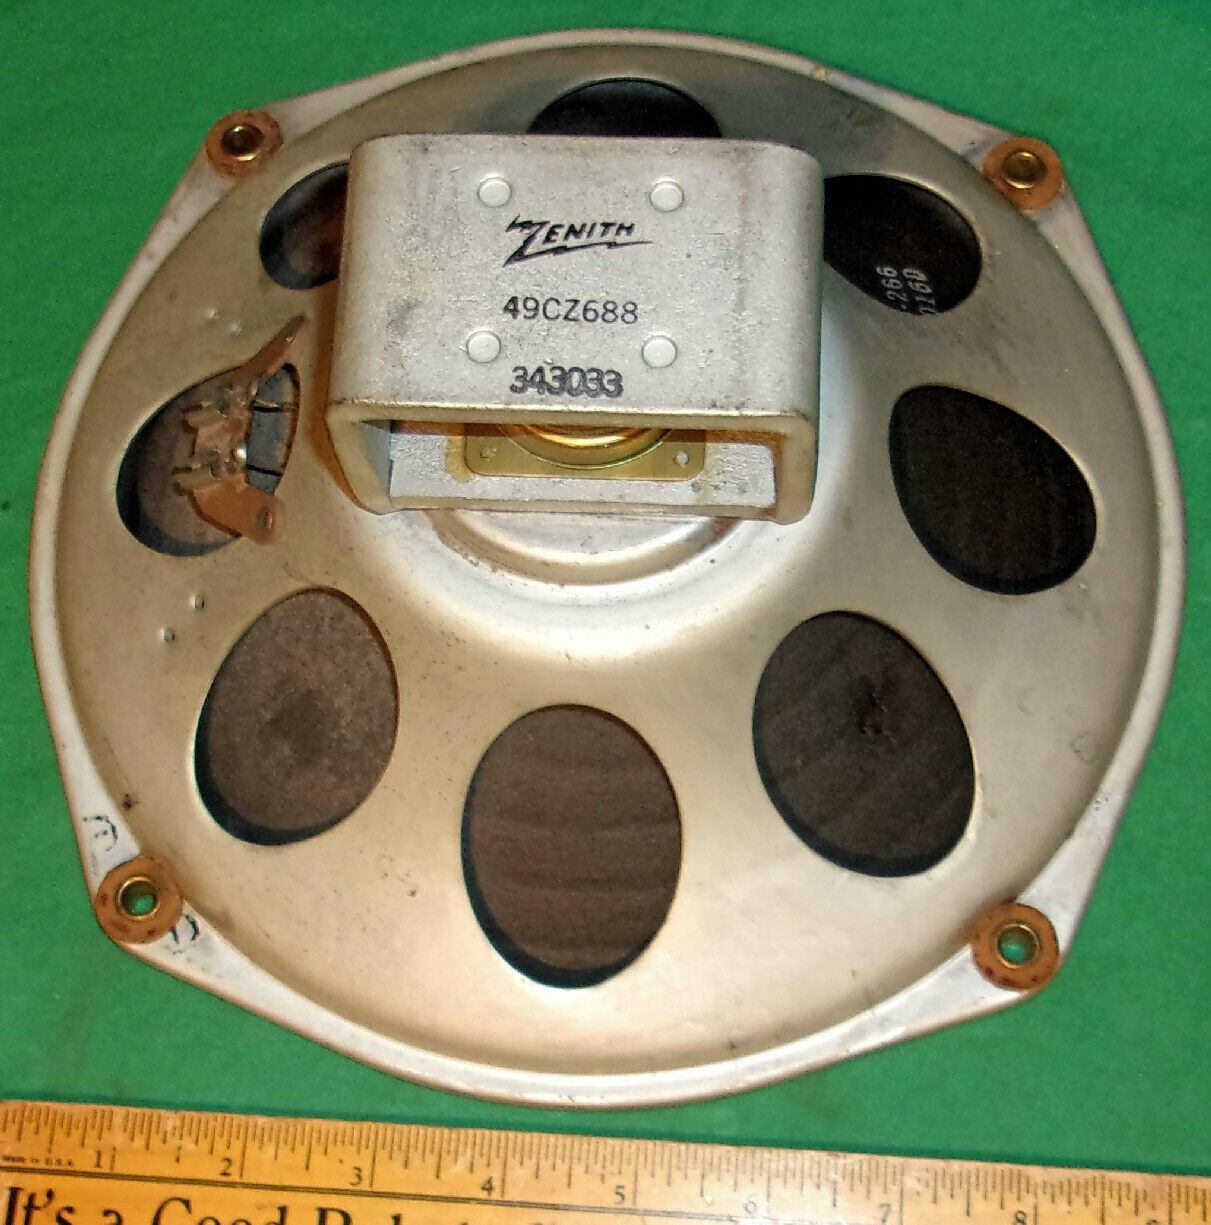 Vintage Zenith Speaker 9 1/2 Inches type 49CZ688 (1950) Clean Working